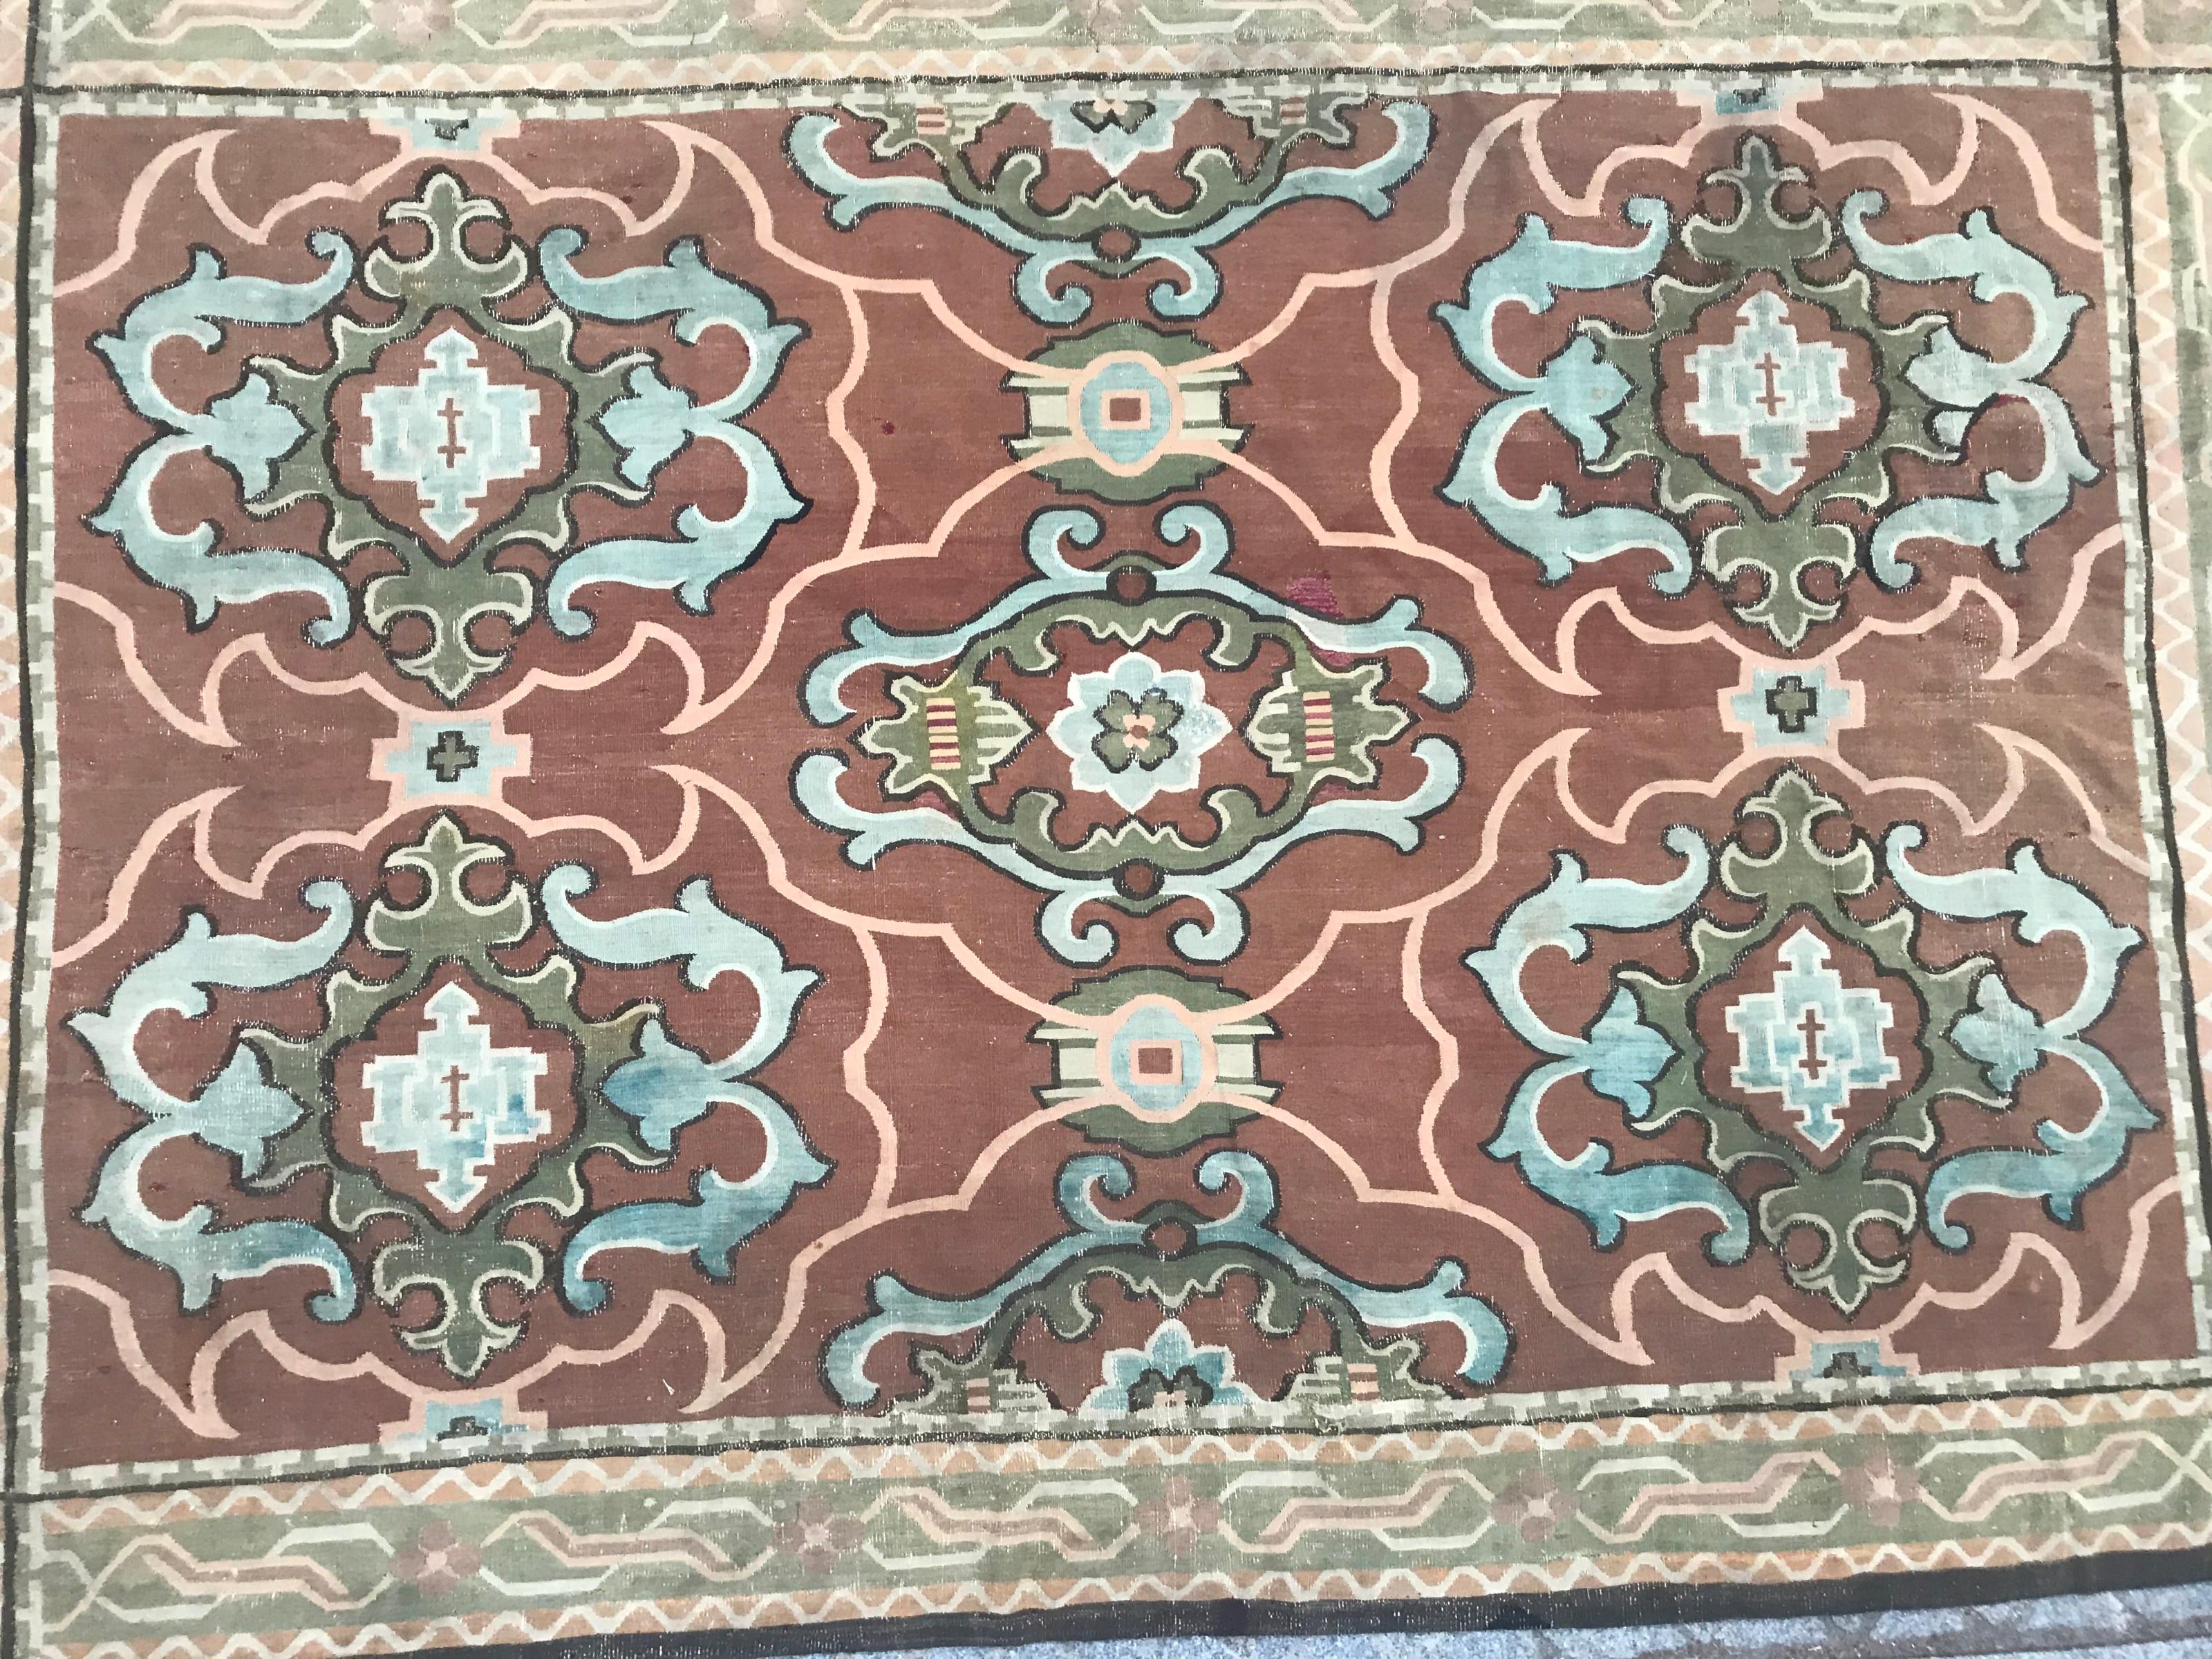 Magnifique tapis d'Aubusson français du 19ème siècle avec un beau design décoratif français de style Louis XIV, et des couleurs naturelles avec du marron, du vert et du bleu, entièrement tissé à la main avec de la laine sur une base de